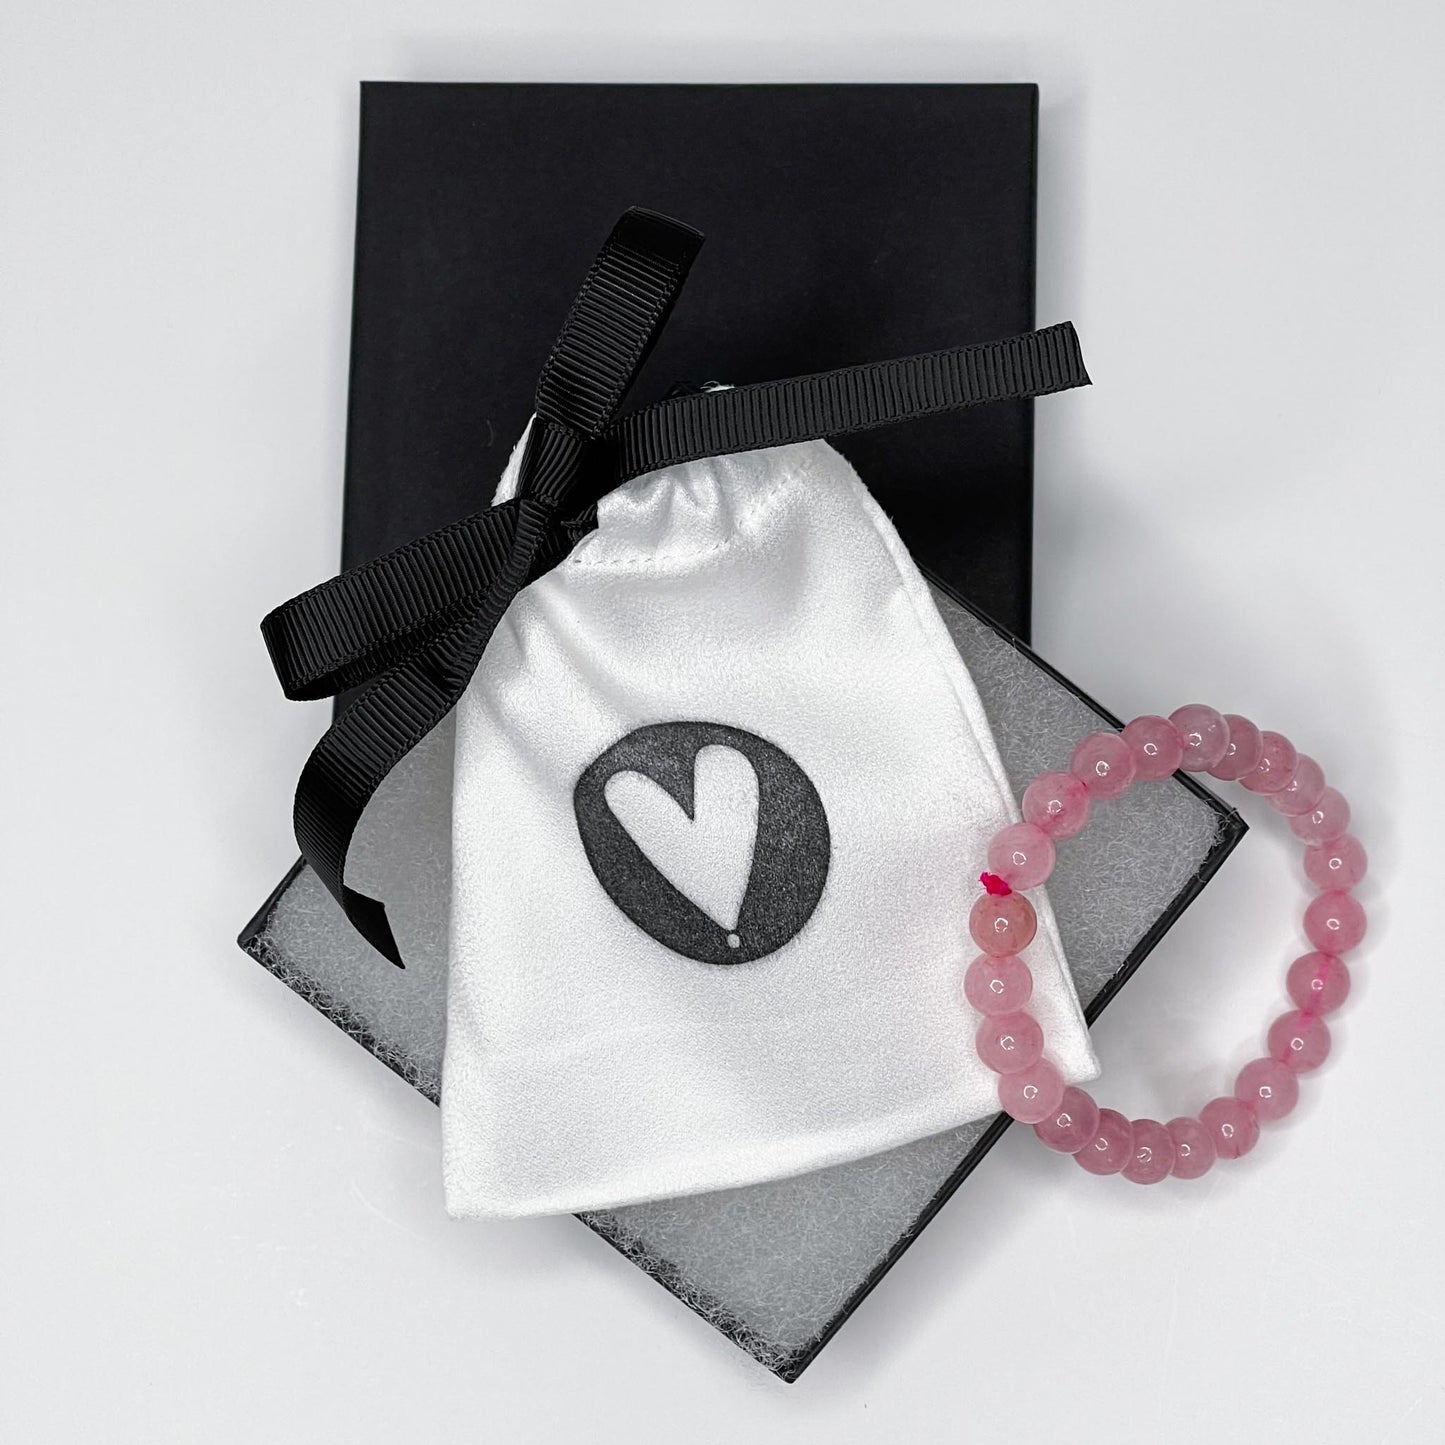 Unconditional Love – Rose Quartz Bracelet